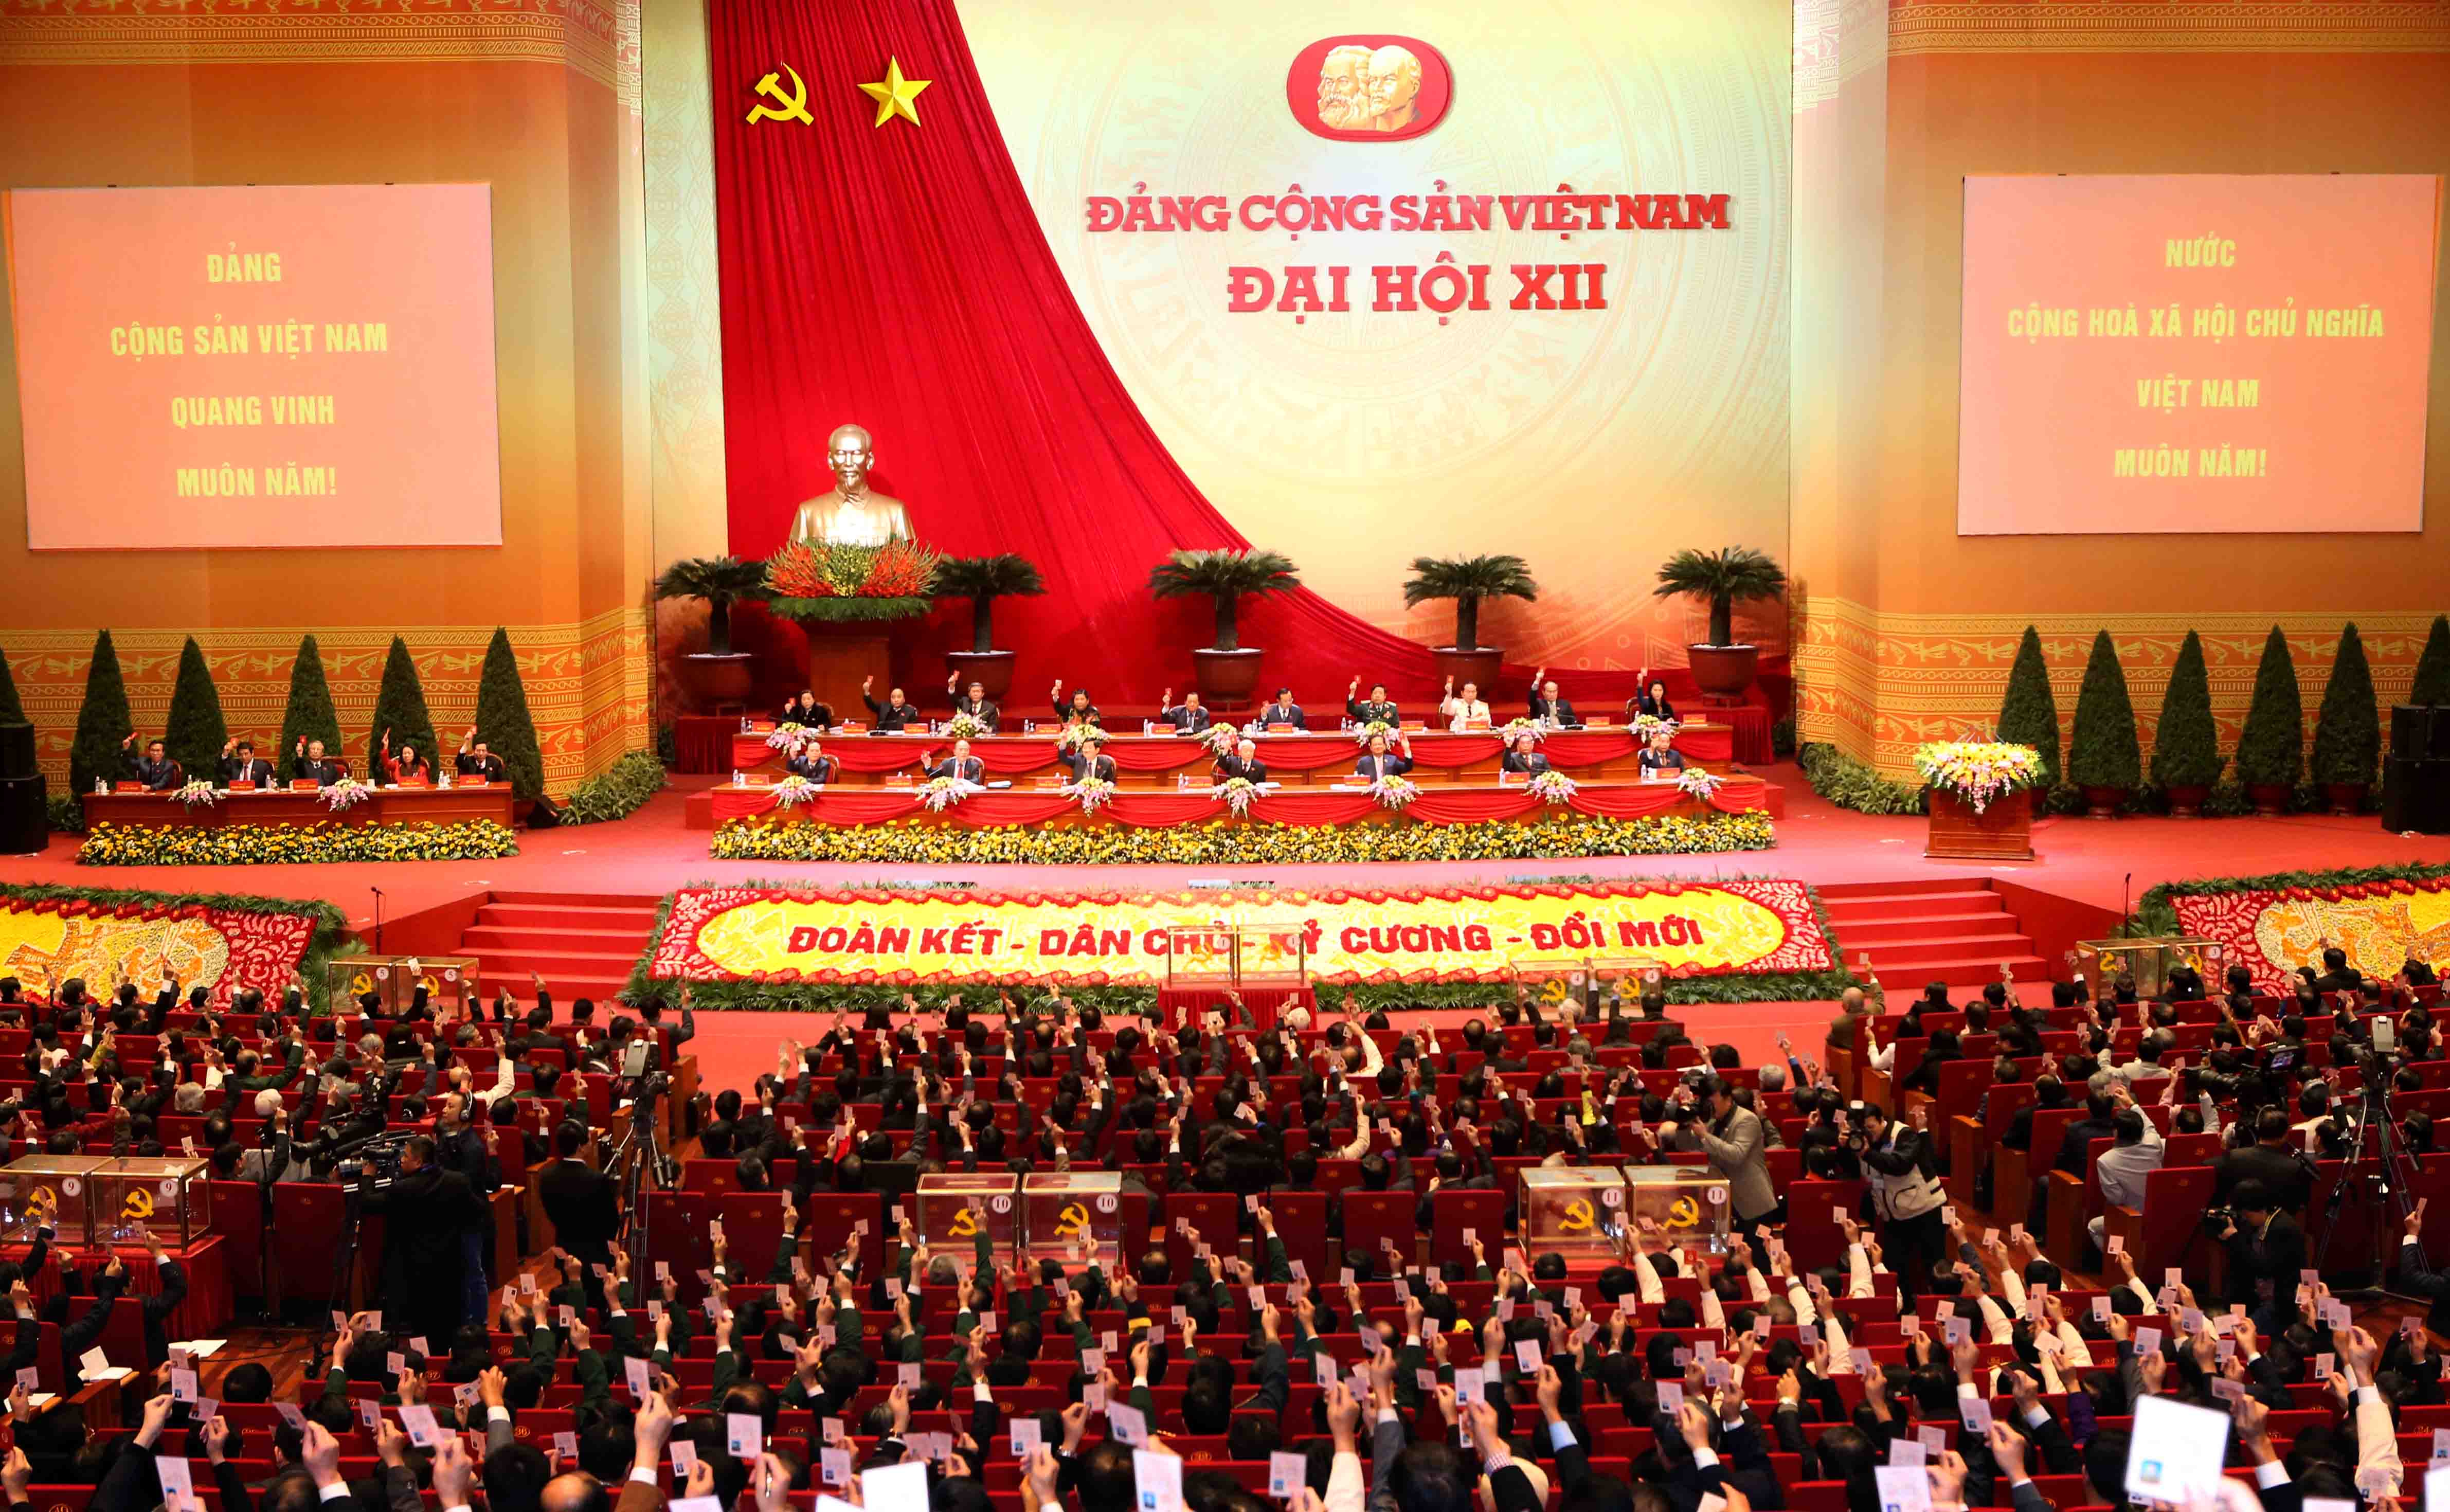 Ai là công chức trong cơ quan của Đảng Cộng sản Việt Nam?